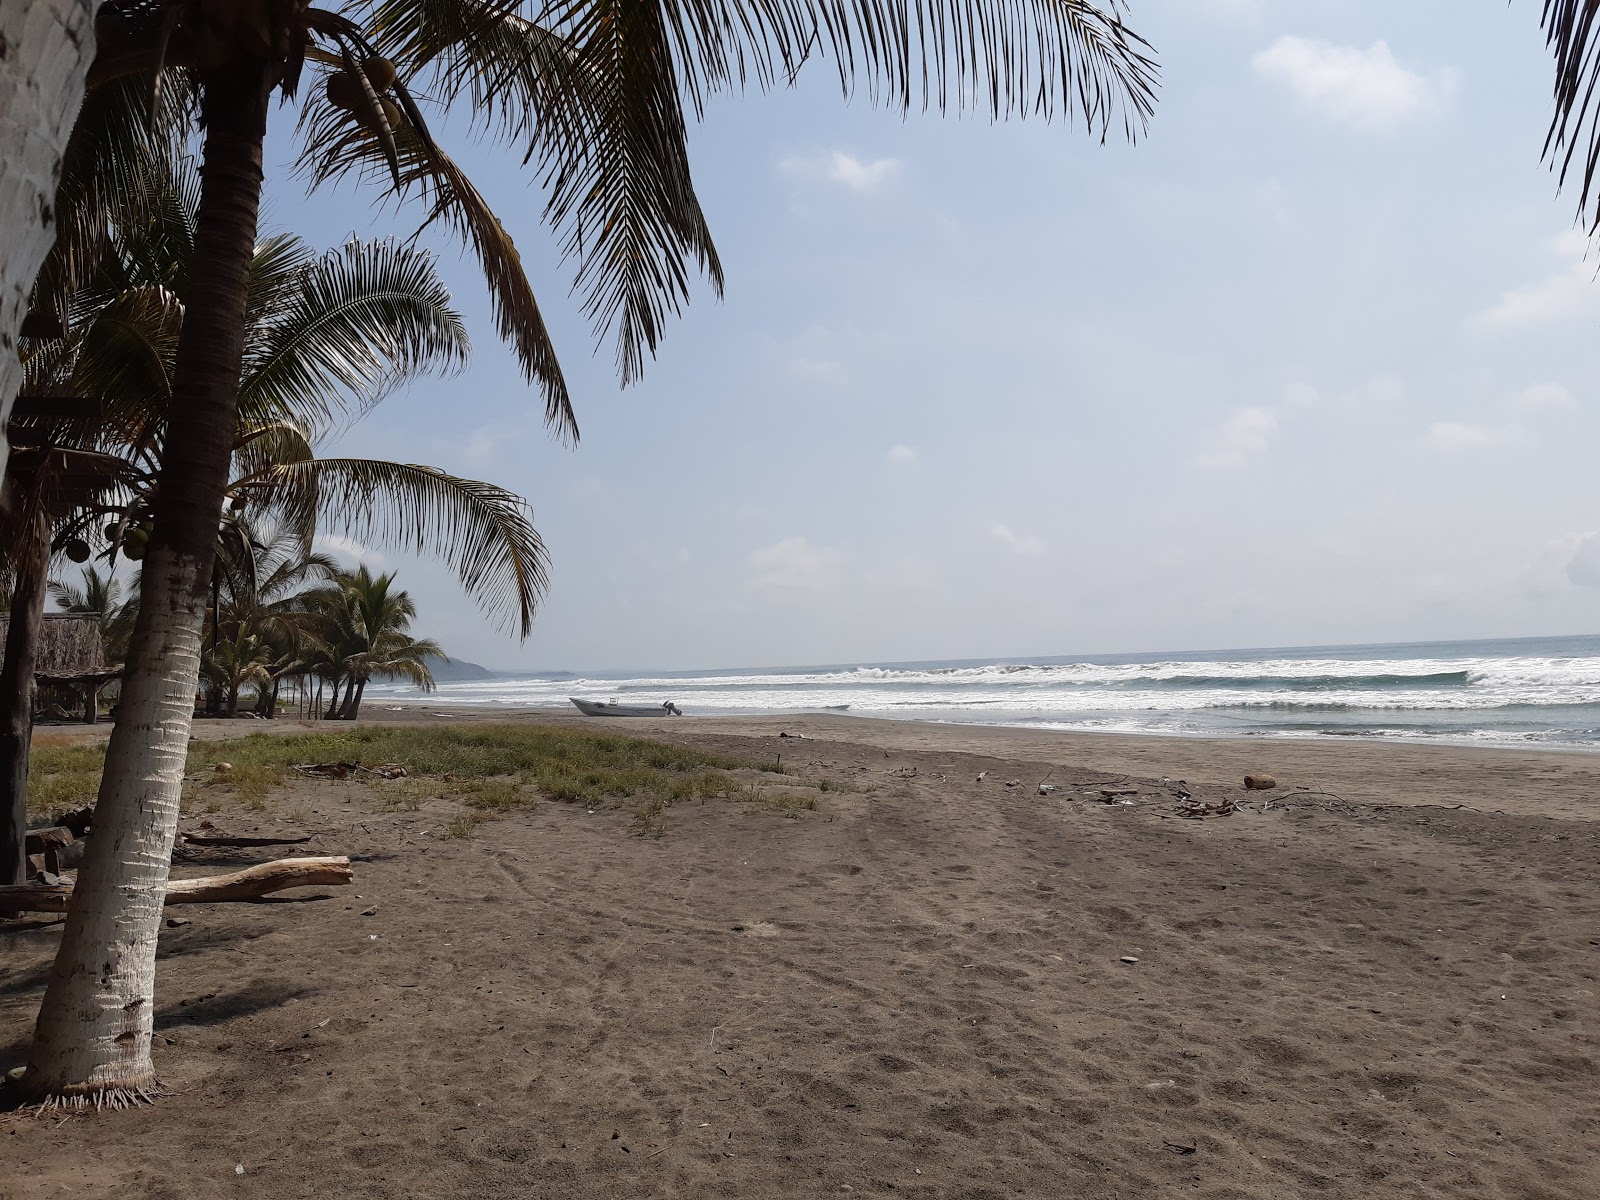 Playa La Placita'in fotoğrafı kahverengi kum yüzey ile